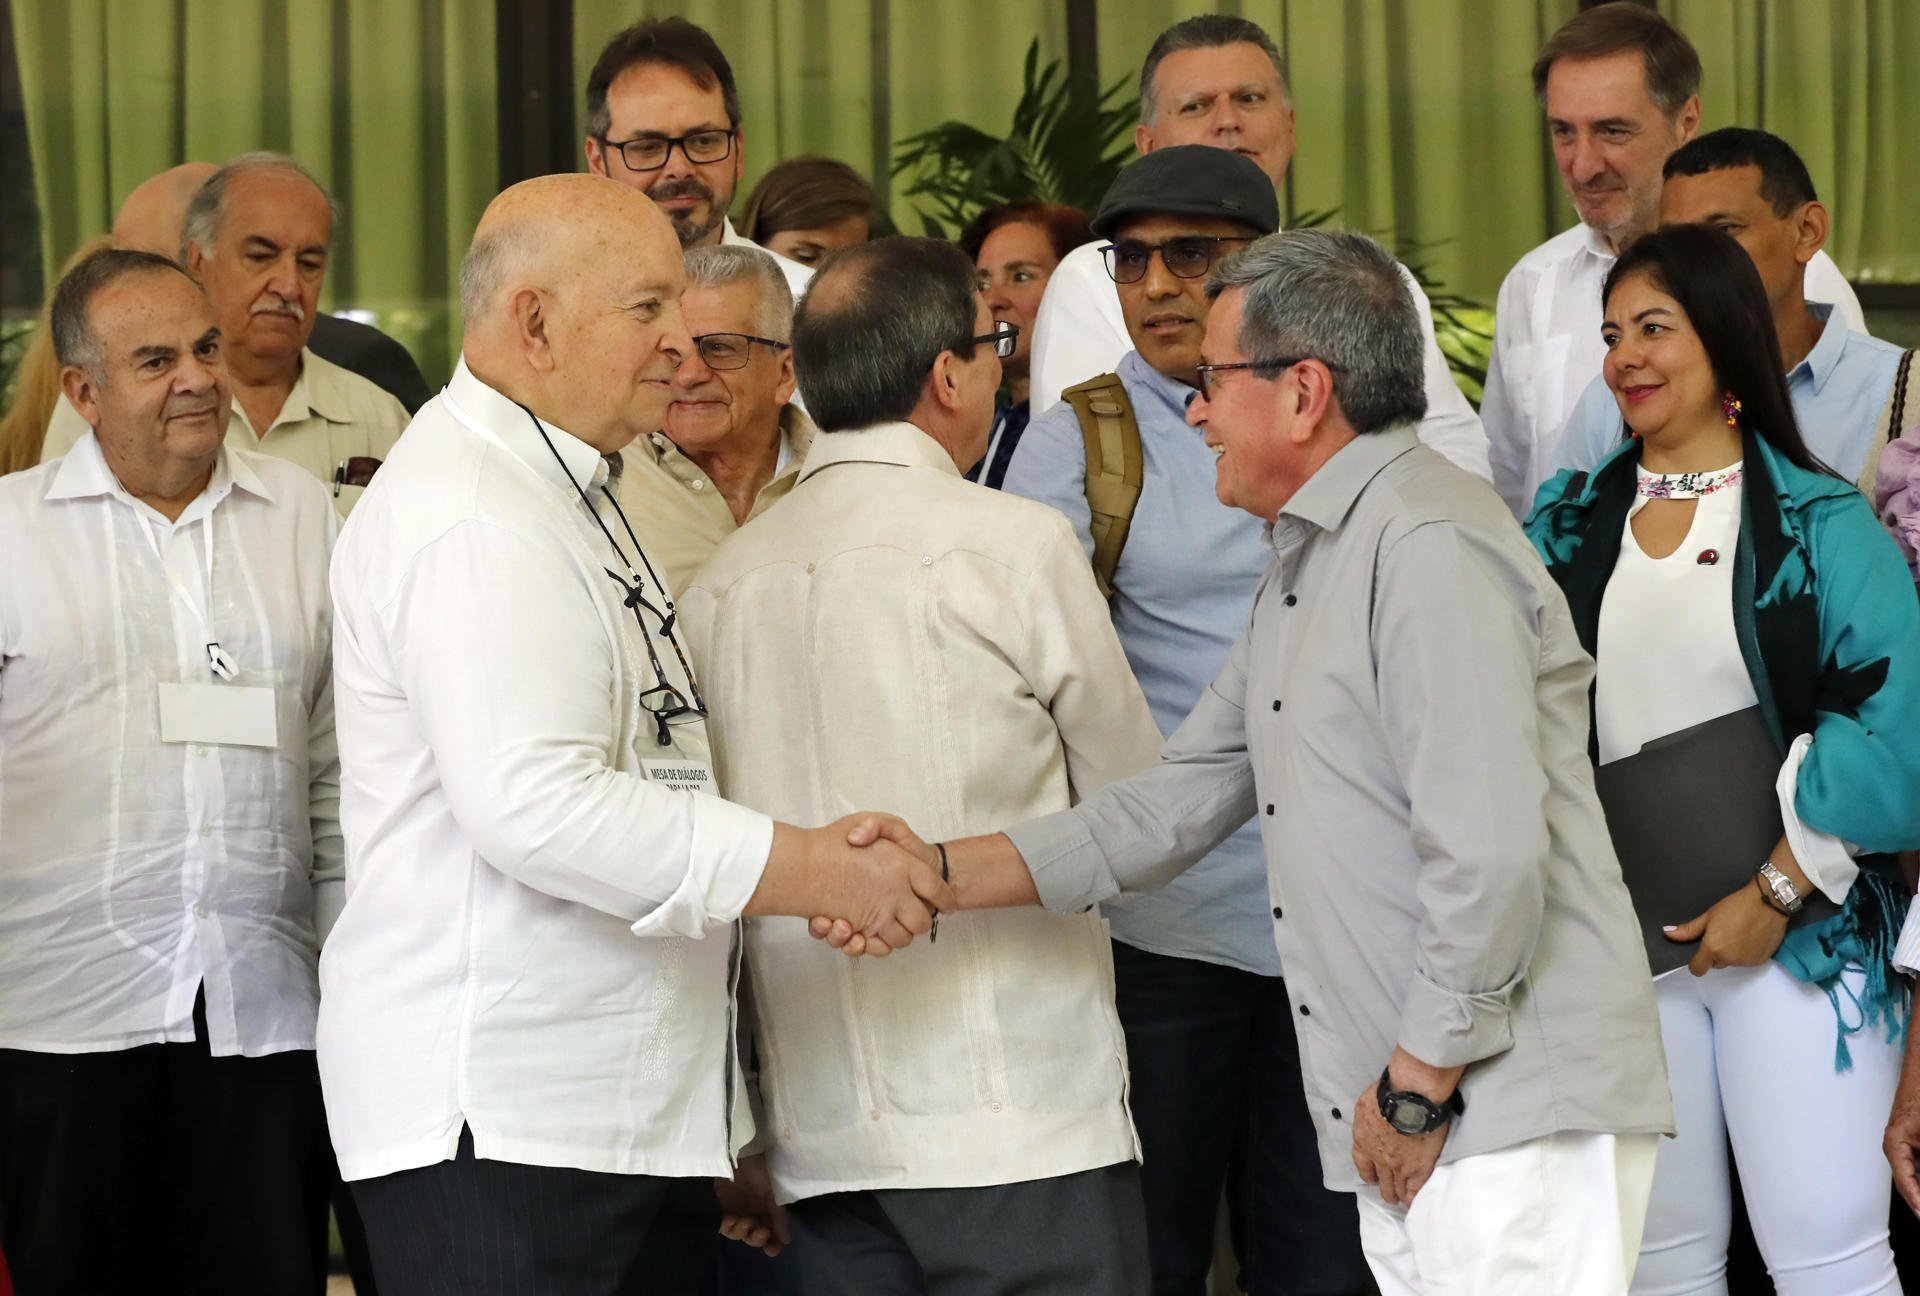 El Gobierno colombiano y el ELN prorrogan seis meses más el cese al fuego bilateral